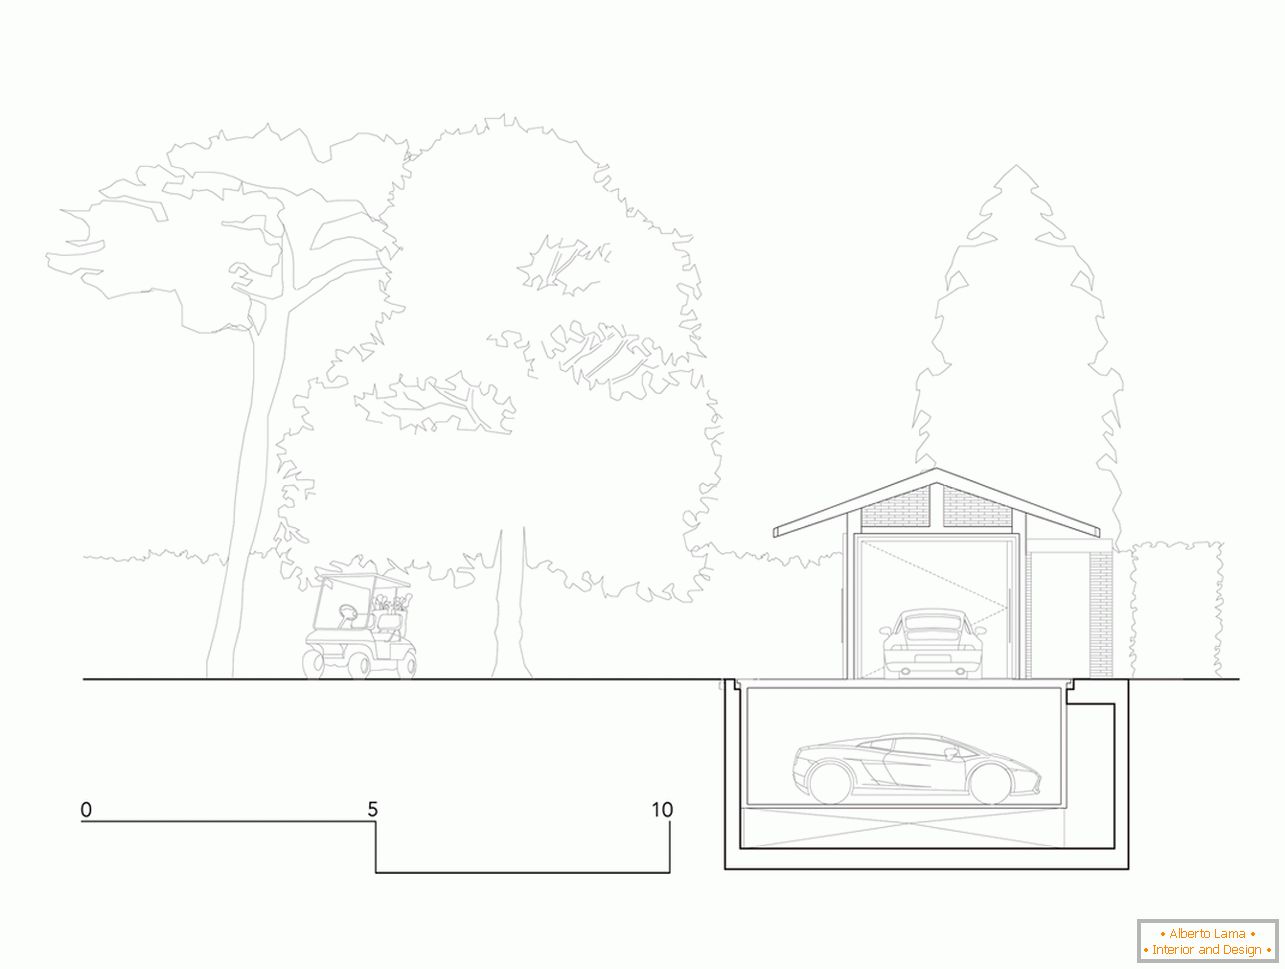 La disposizione del garage con una tettoia